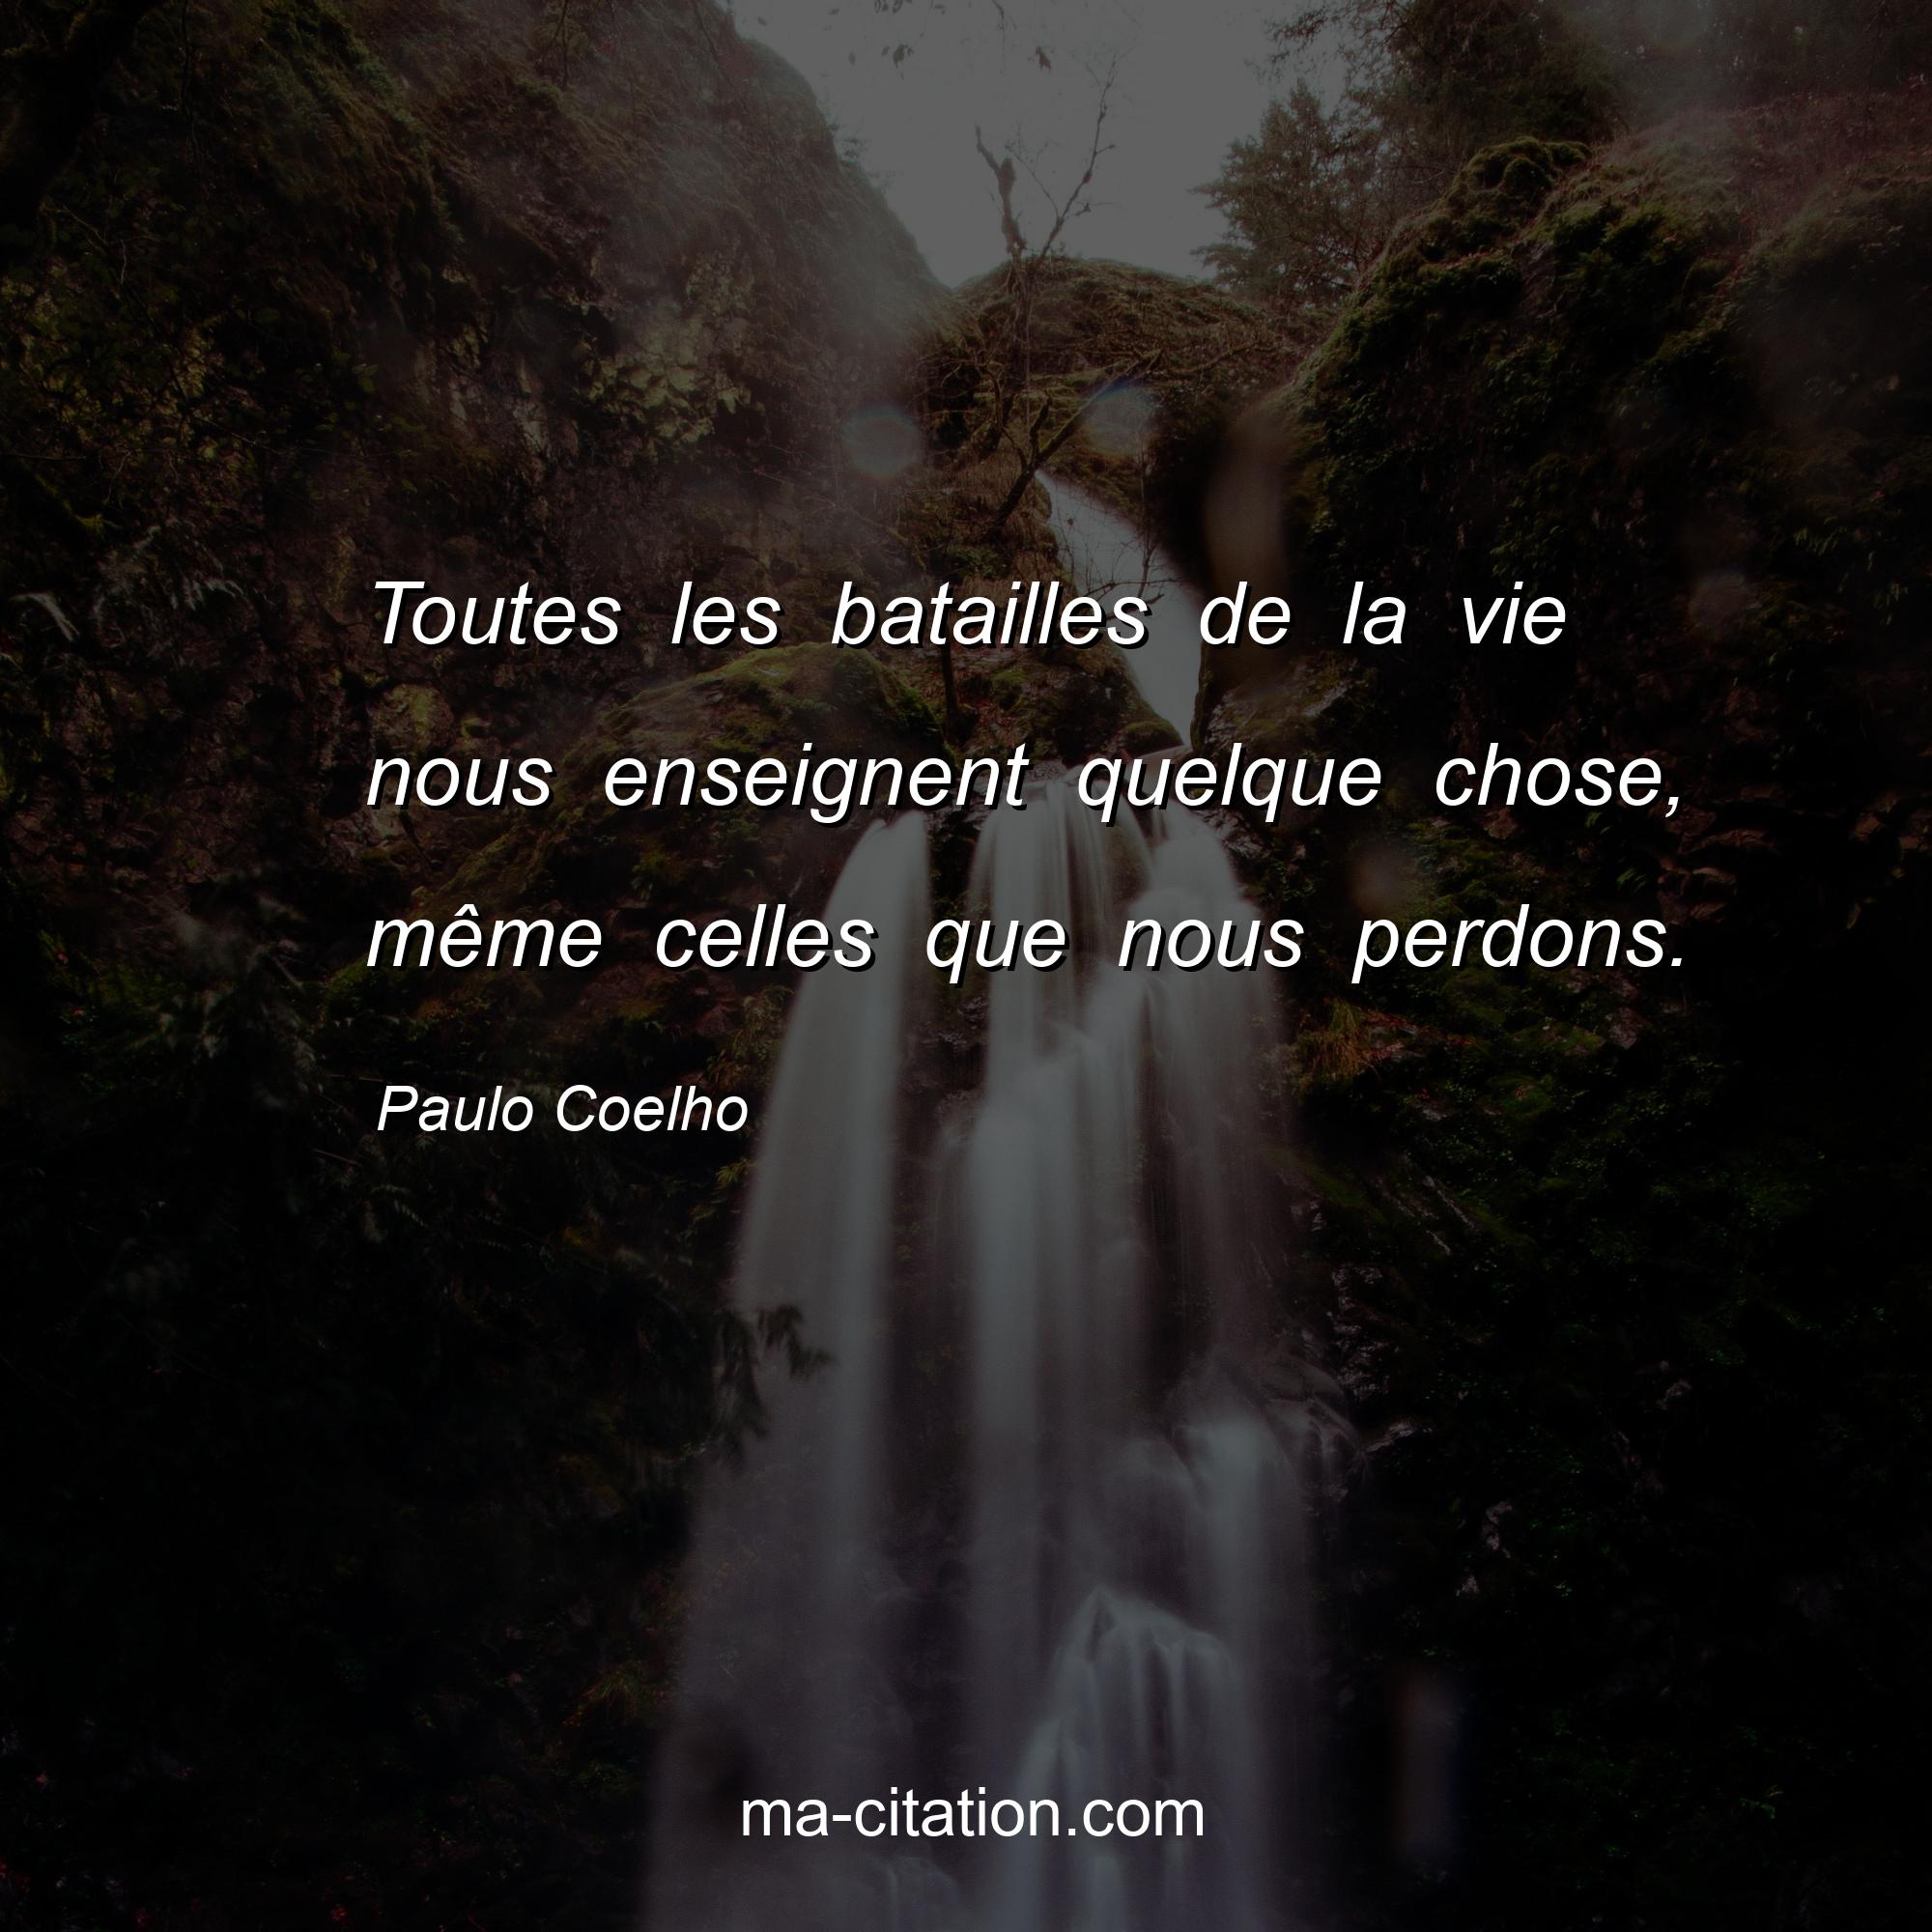 Paulo Coelho : Toutes les batailles de la vie nous enseignent quelque chose, même celles que nous perdons.